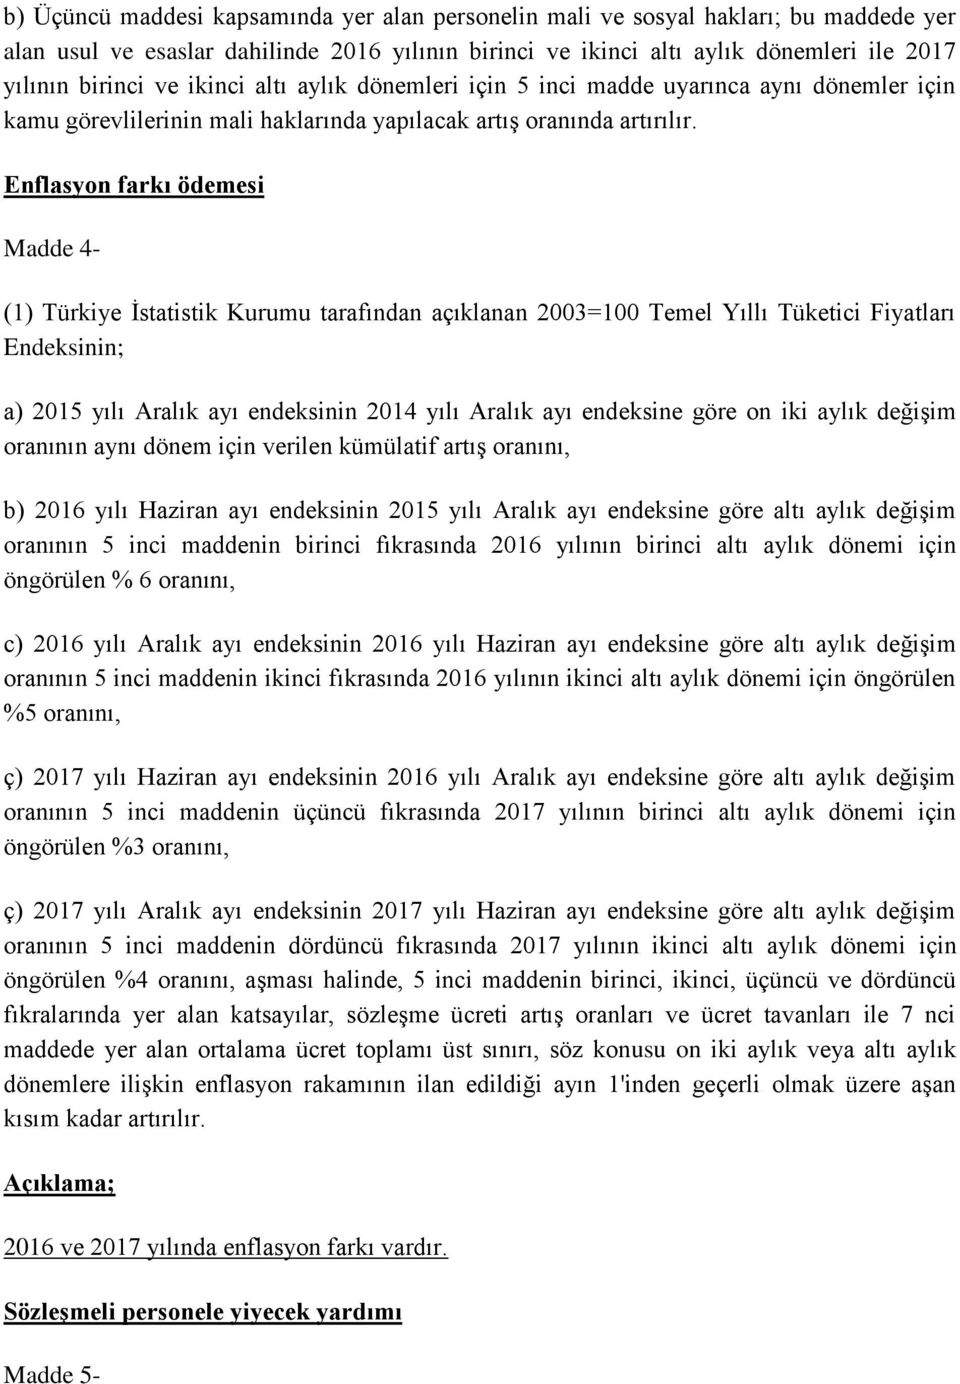 Enflasyon farkı ödemesi Madde 4- (1) Türkiye İstatistik Kurumu tarafından açıklanan 2003=100 Temel Yıllı Tüketici Fiyatları Endeksinin; a) 2015 yılı Aralık ayı endeksinin 2014 yılı Aralık ayı